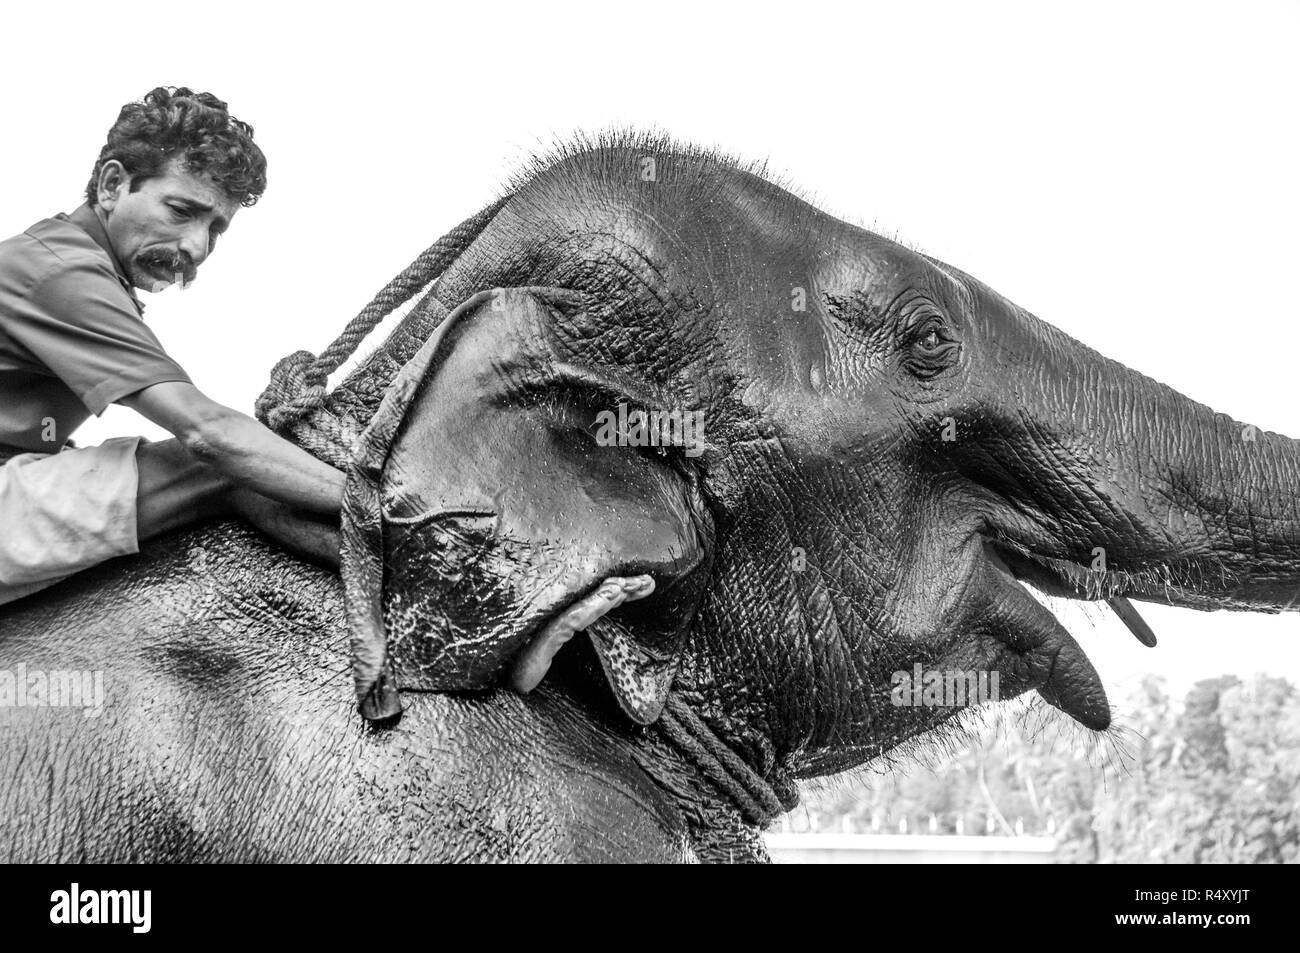 Indian elephant enjoying a good ear scratch! Stock Photo